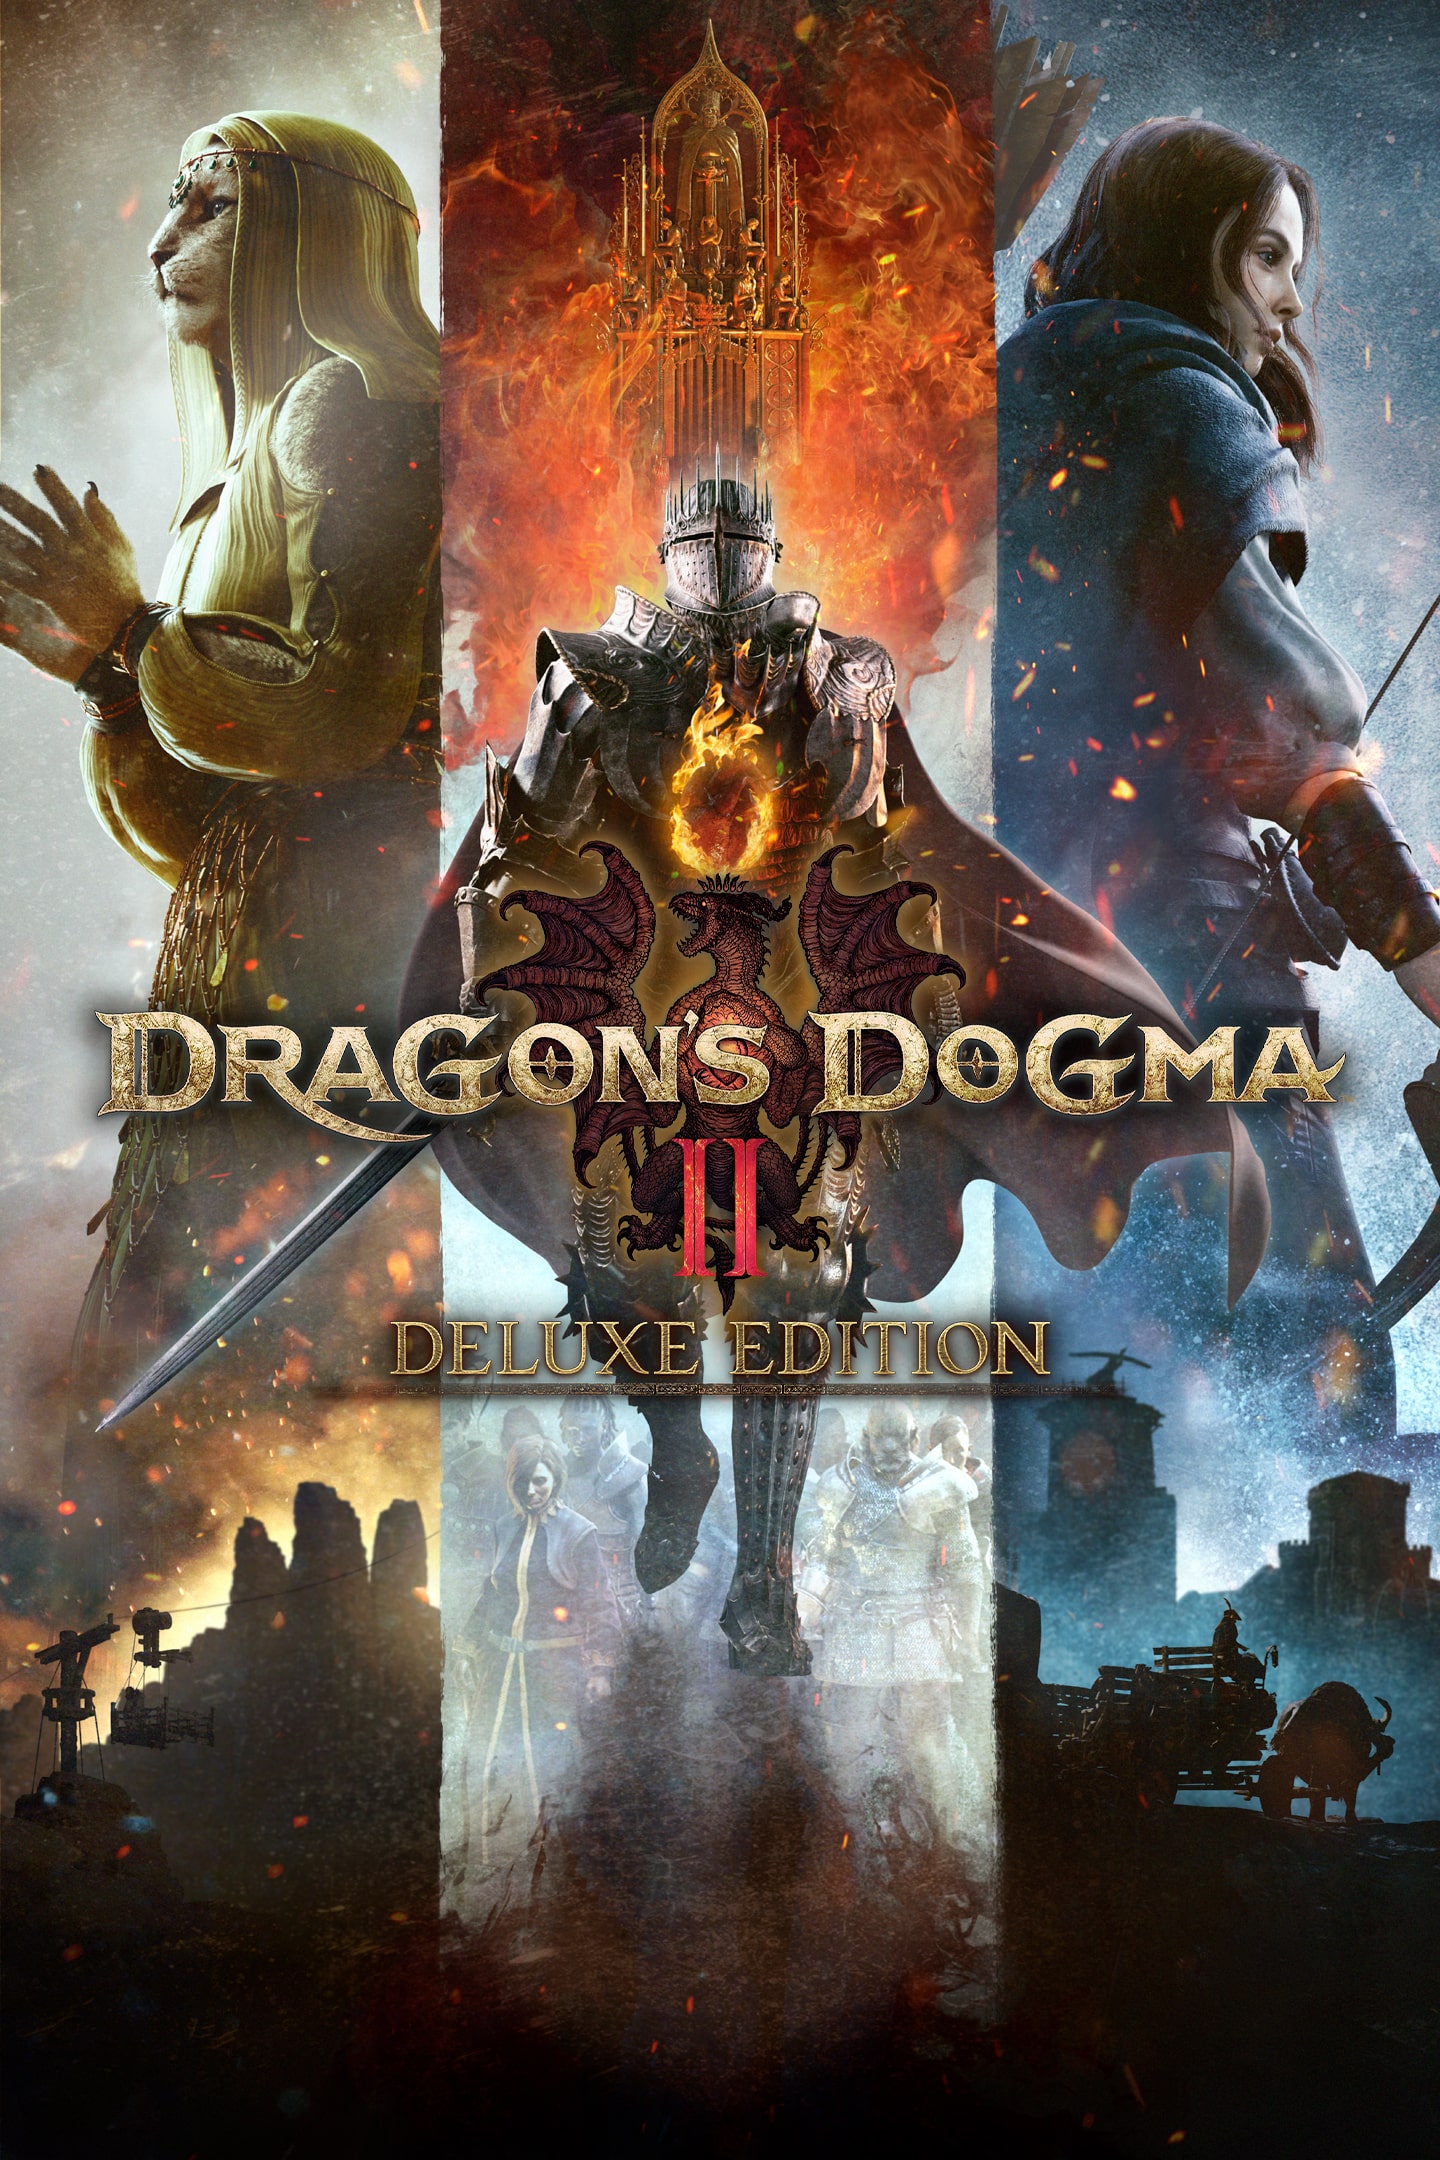 Dragon's Dogma 2 - Download